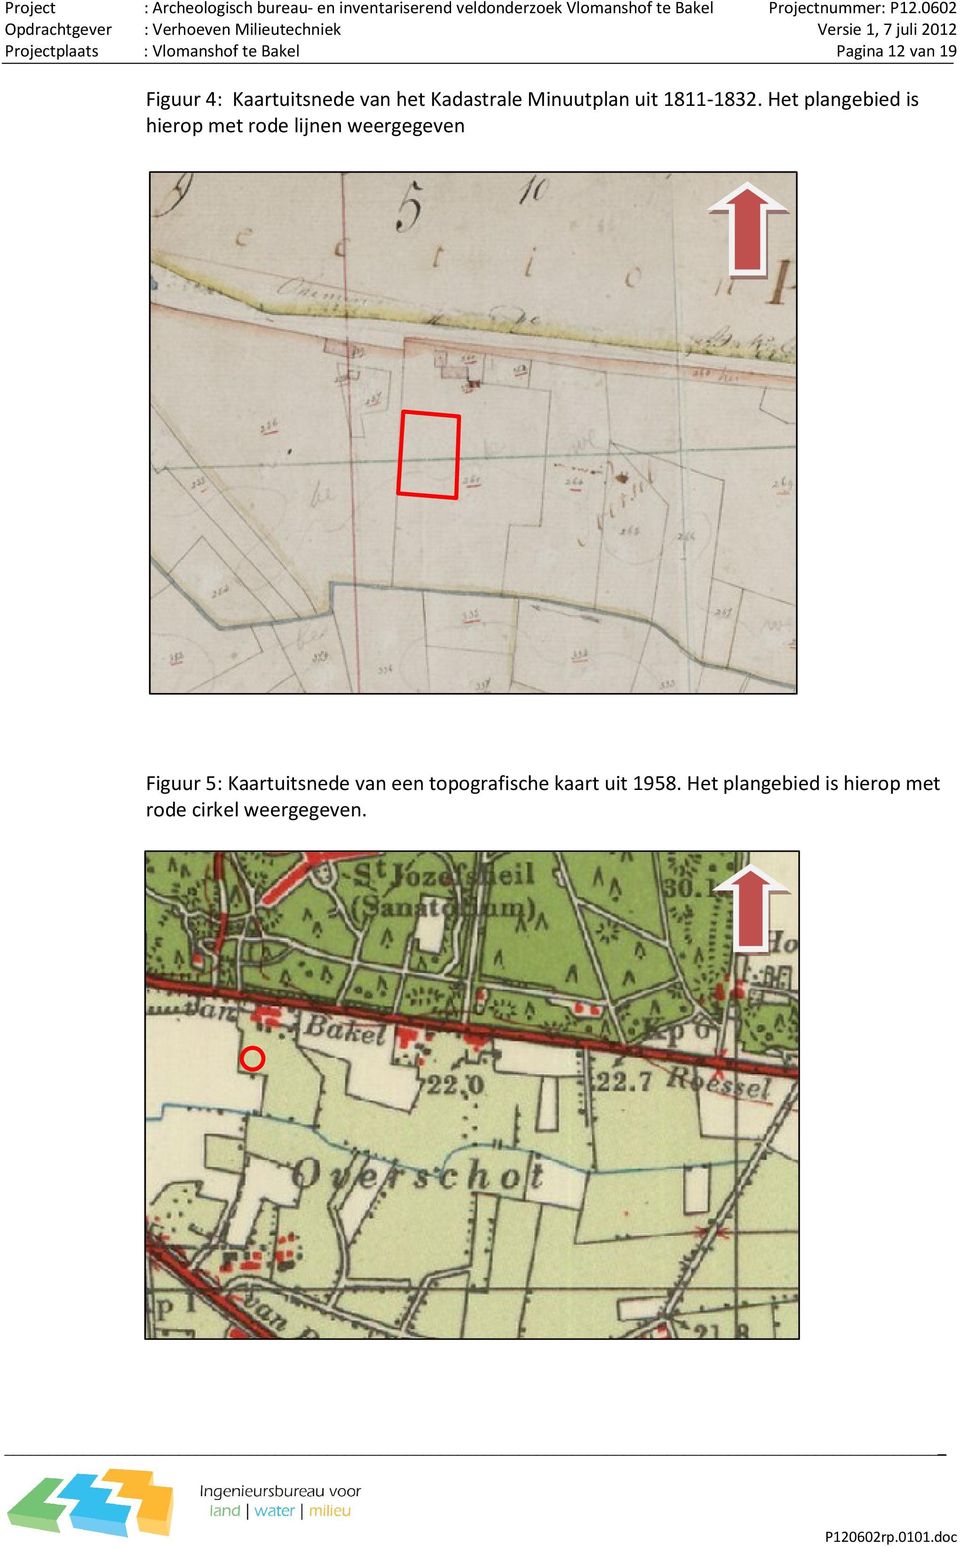 Het plangebied is hierop met rode lijnen weergegeven Figuur 5: